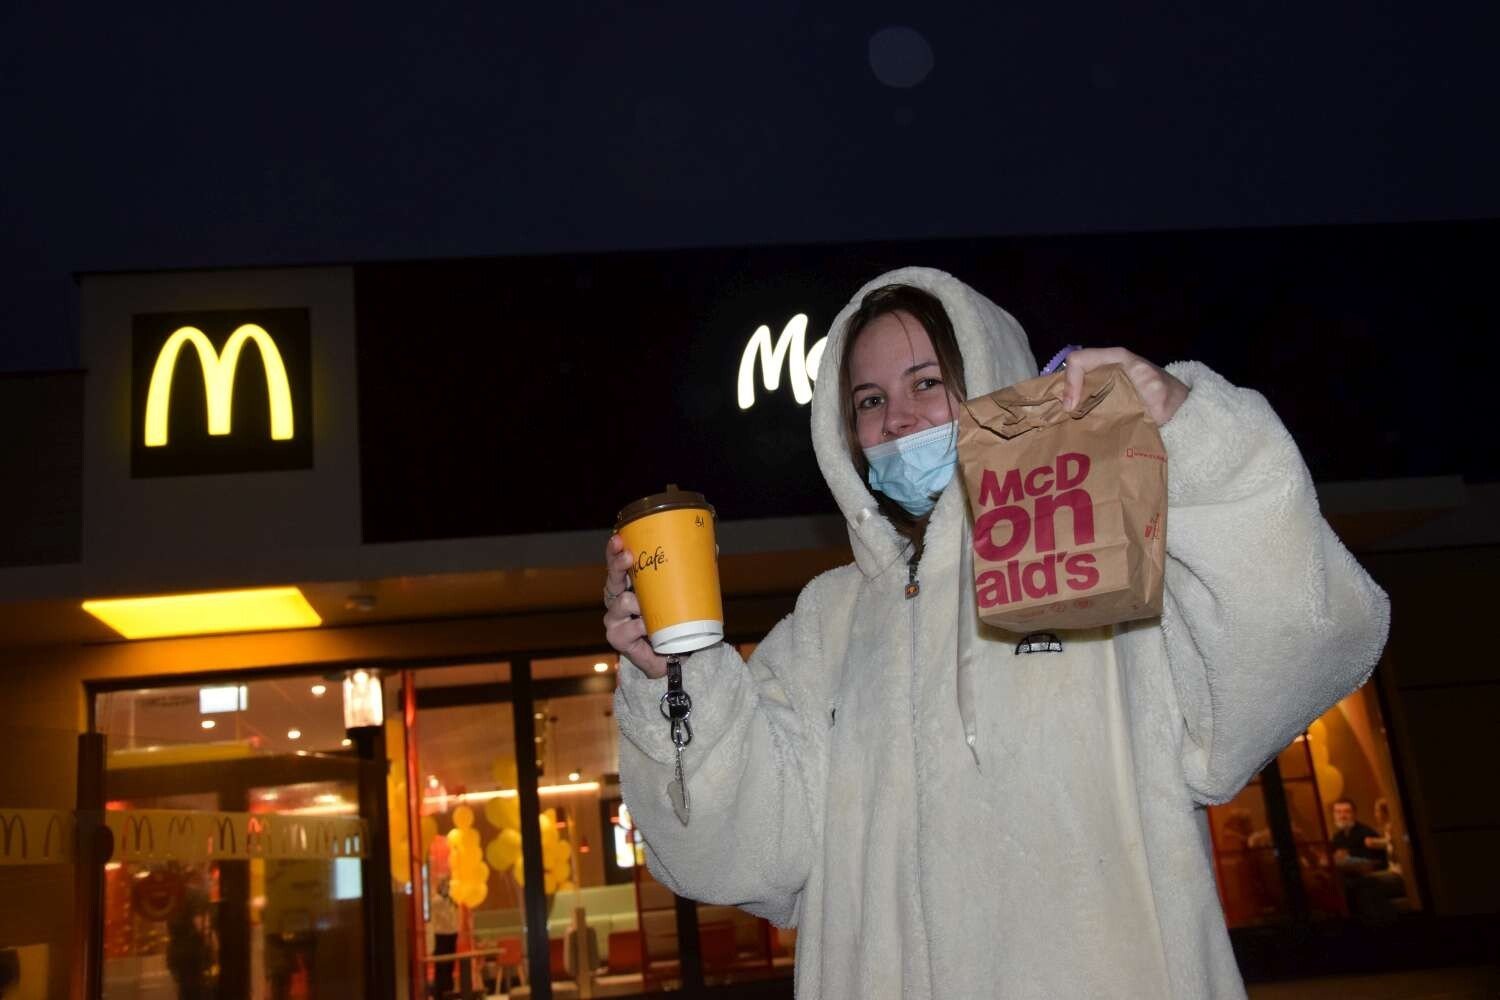 McDonald's otwarty w Wągrowcu. Czy wągrowczanie tłumnie ruszyli do  restauracji? | Wągrowiec Nasze Miasto